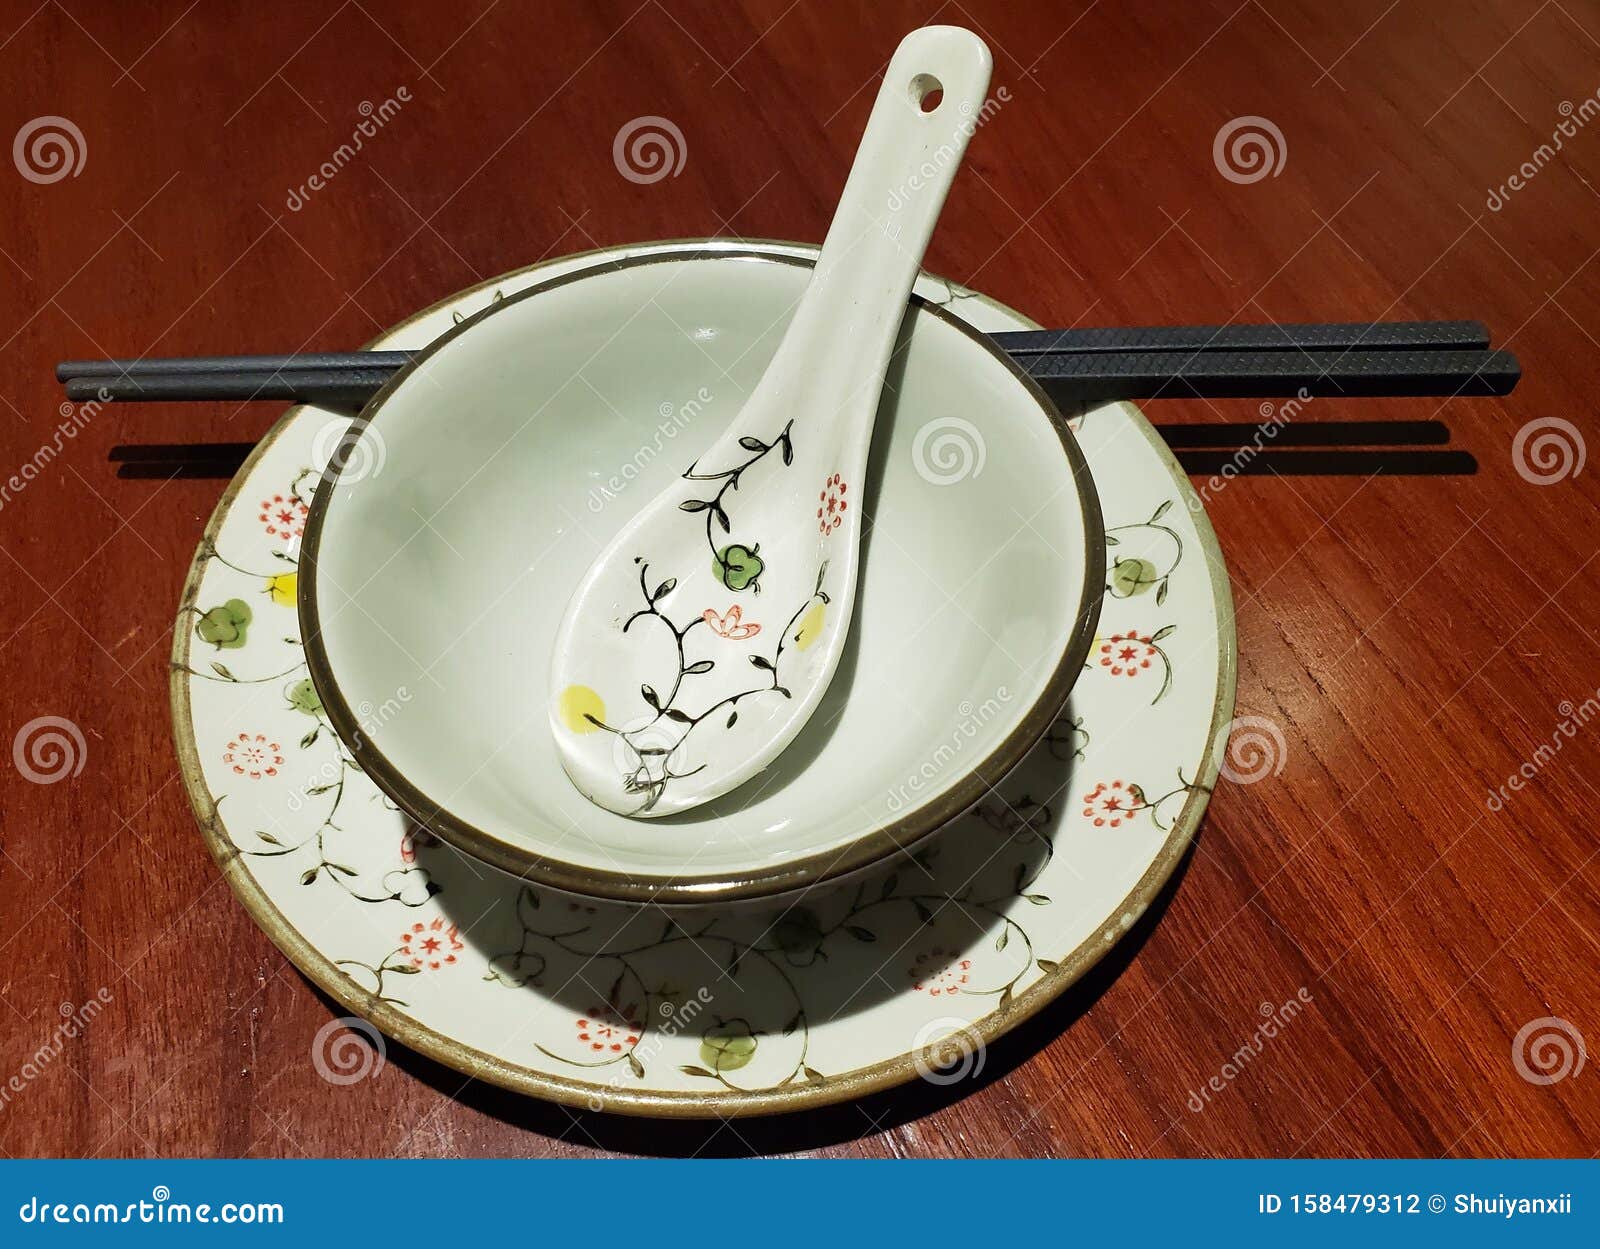 https://thumbs.dreamstime.com/z/vaisselle-traditionnelle-chinoise-assiette-de-porcelaine-bol-cuill%C3%A8re-baguettes-158479312.jpg